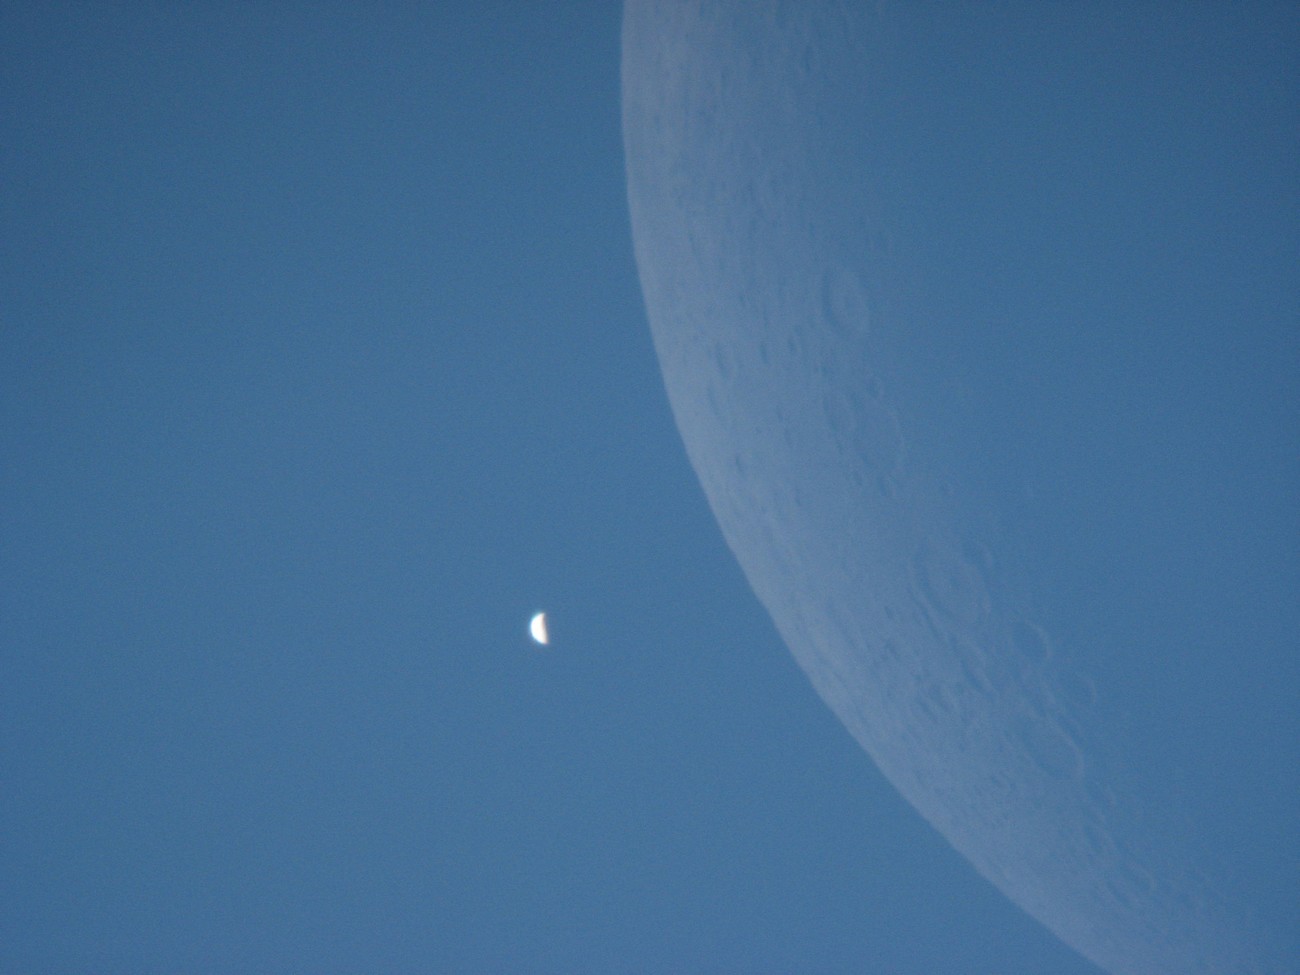 Le croissant de Vénus photographié en plein jour le 18 juin 2007 après son passage&nbsp;derrière la Lune. © Christophe Guesdon/Collège Léo Drouyn